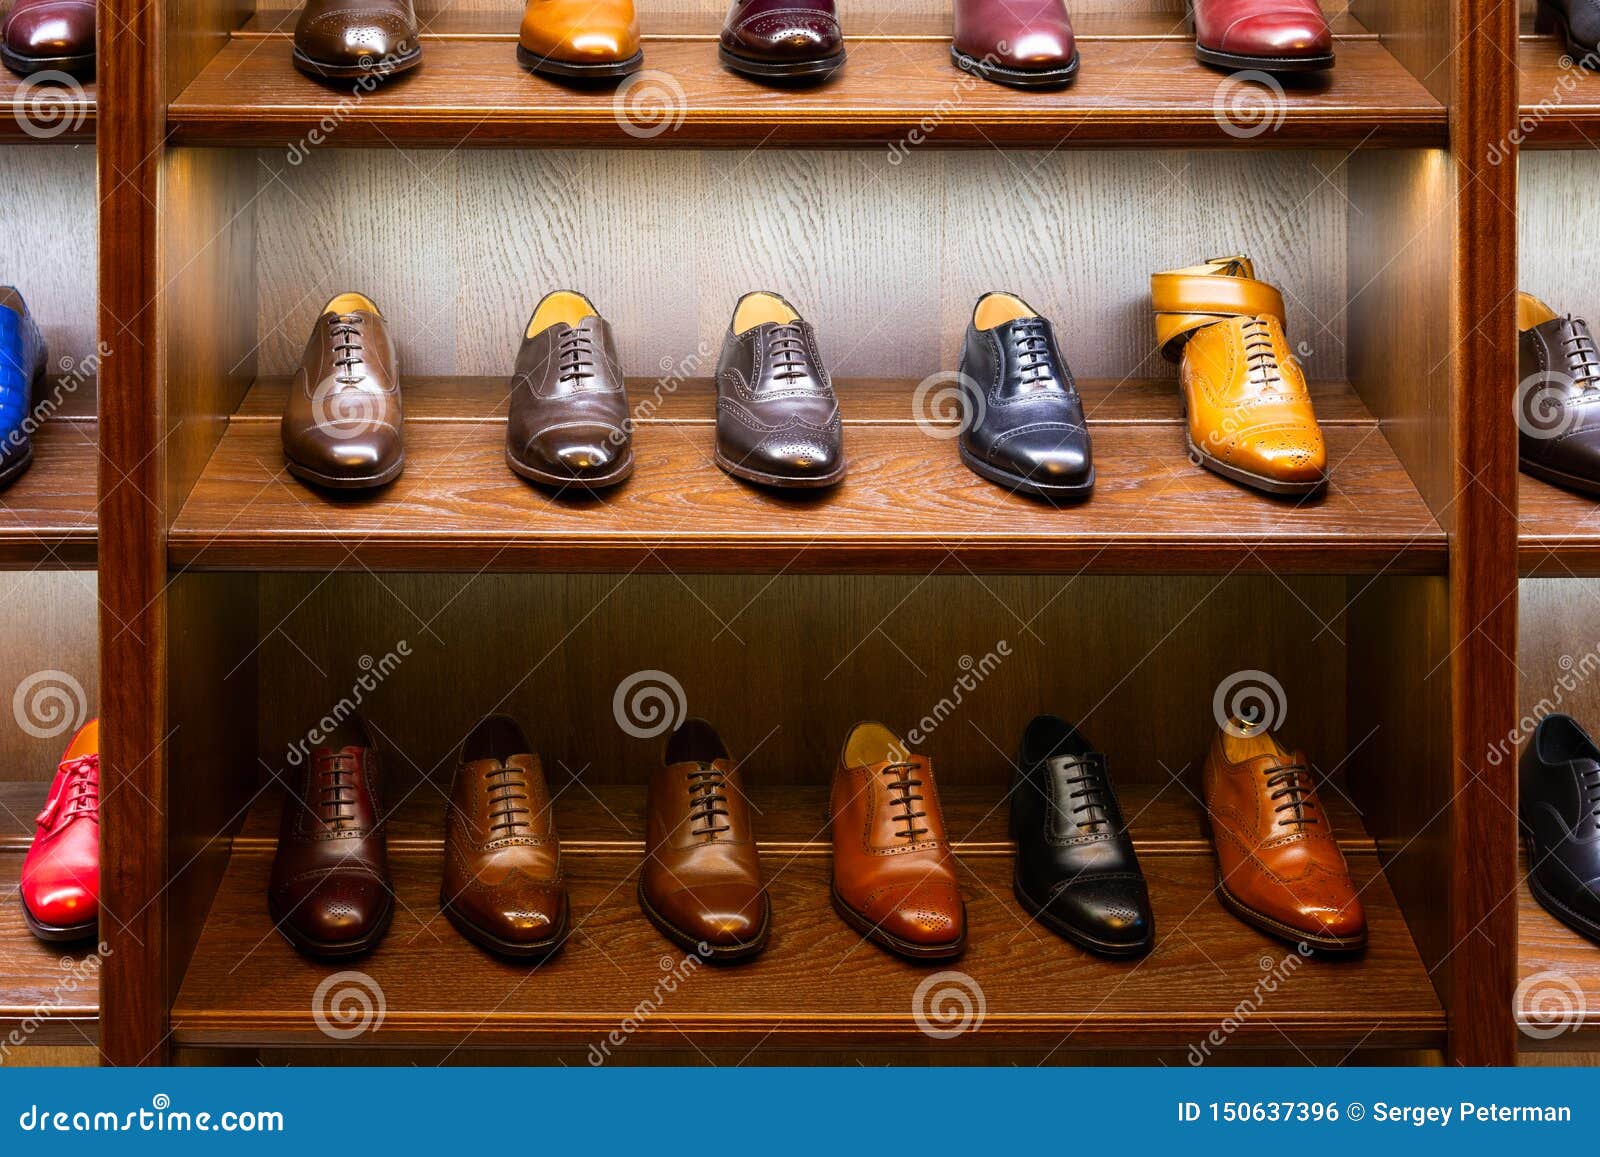 men shoes shop